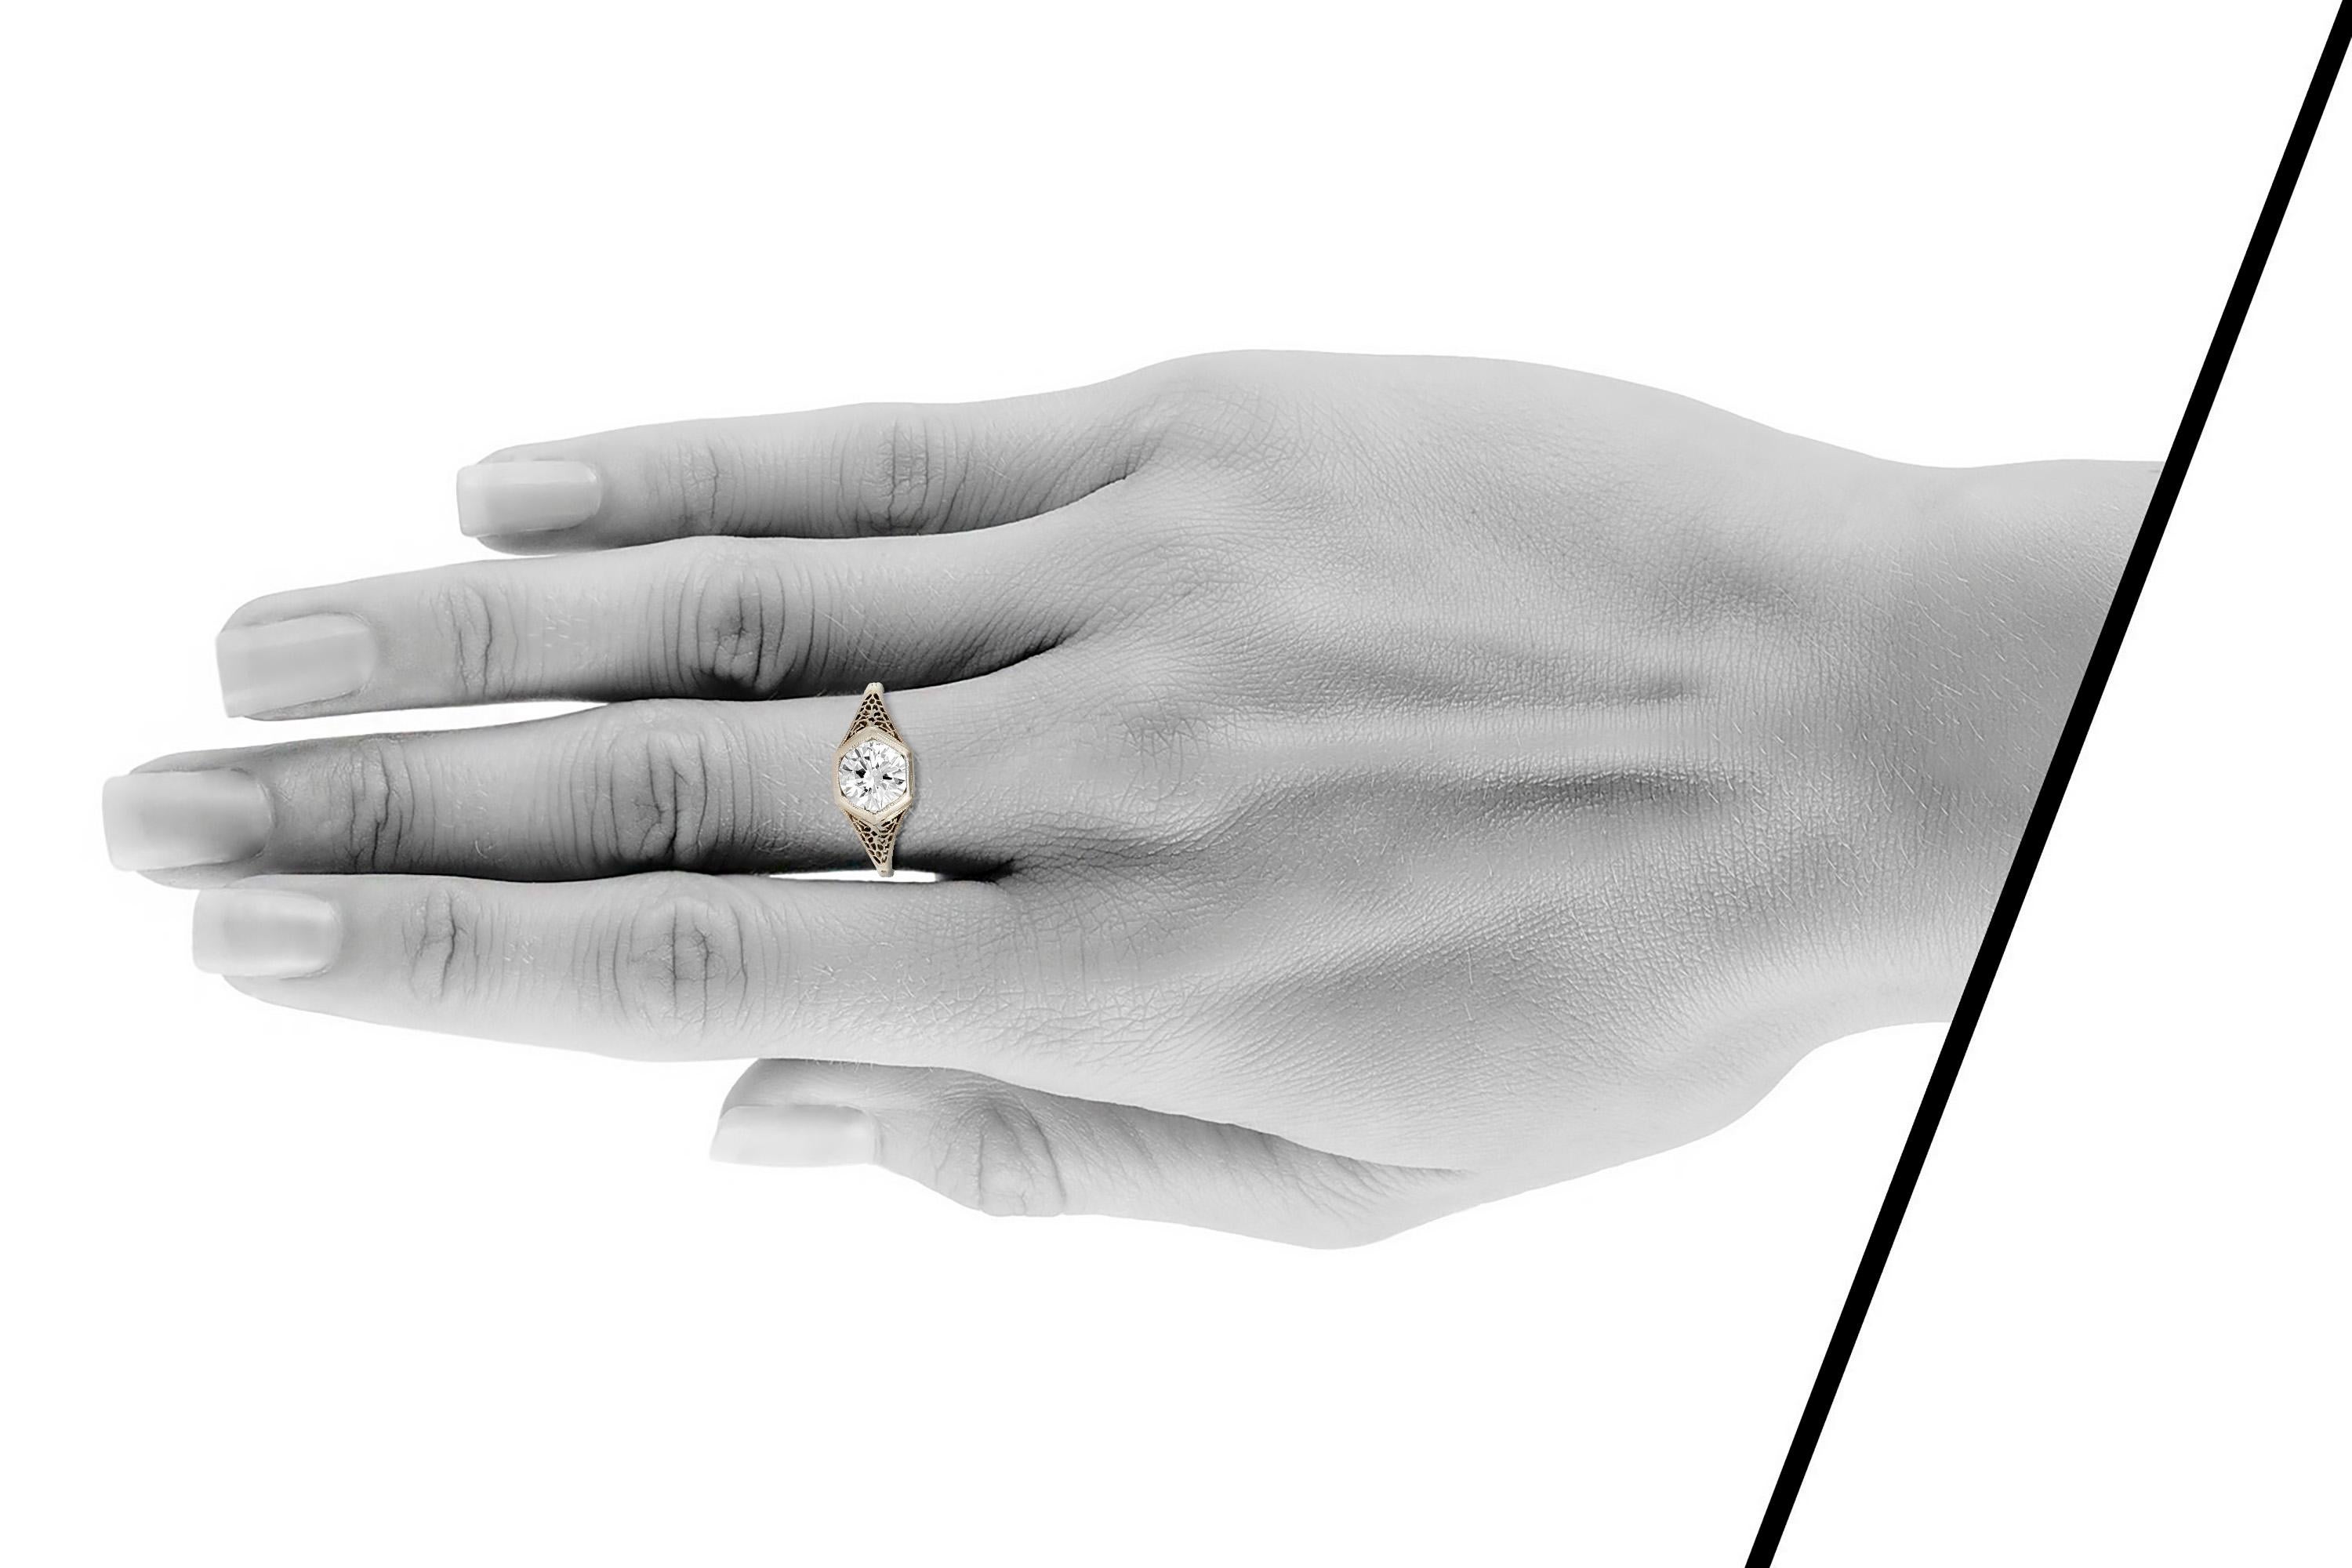 Der schöne Ring ist fein in Handarbeit in 18k Gelbgold mit einem zentralen Diamanten mit einem Gesamtgewicht von etwa 1,17 Karat.
Farbe I
Klarheit VS2